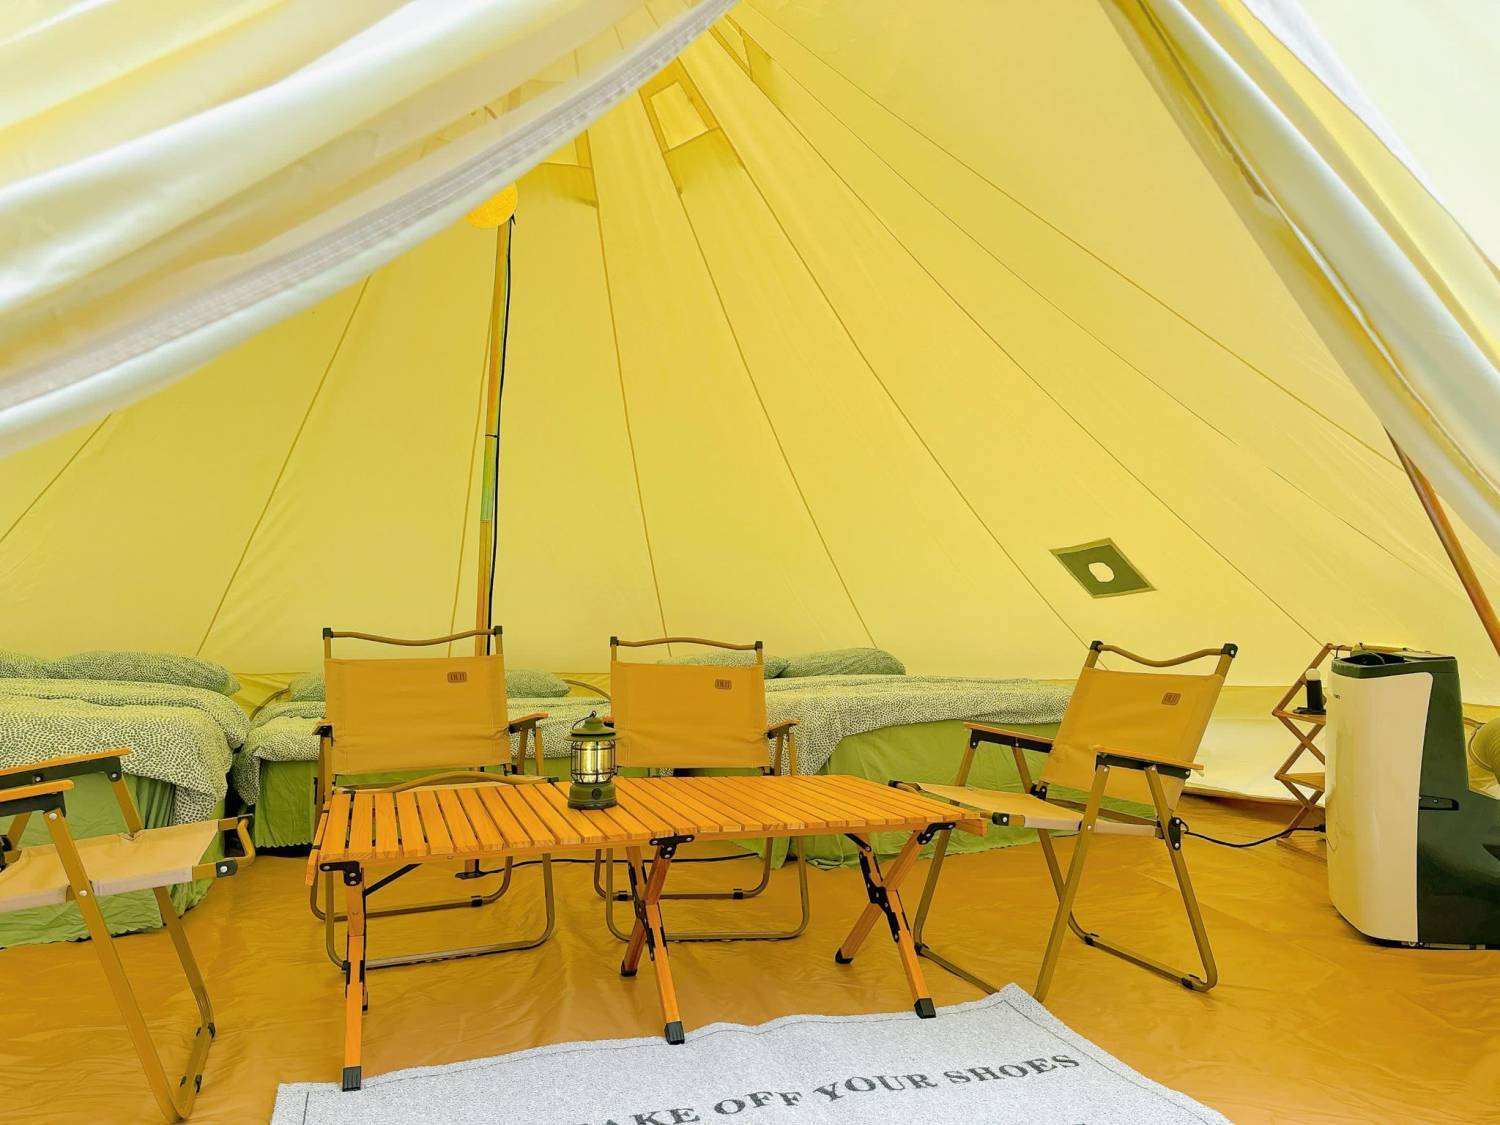 綠行鳥 - 大棠Car Camping + Glamping & 紅葉營地 【大棠豪華露營】六人蒙古包 獨立營位 連元朗生態園入場券 1